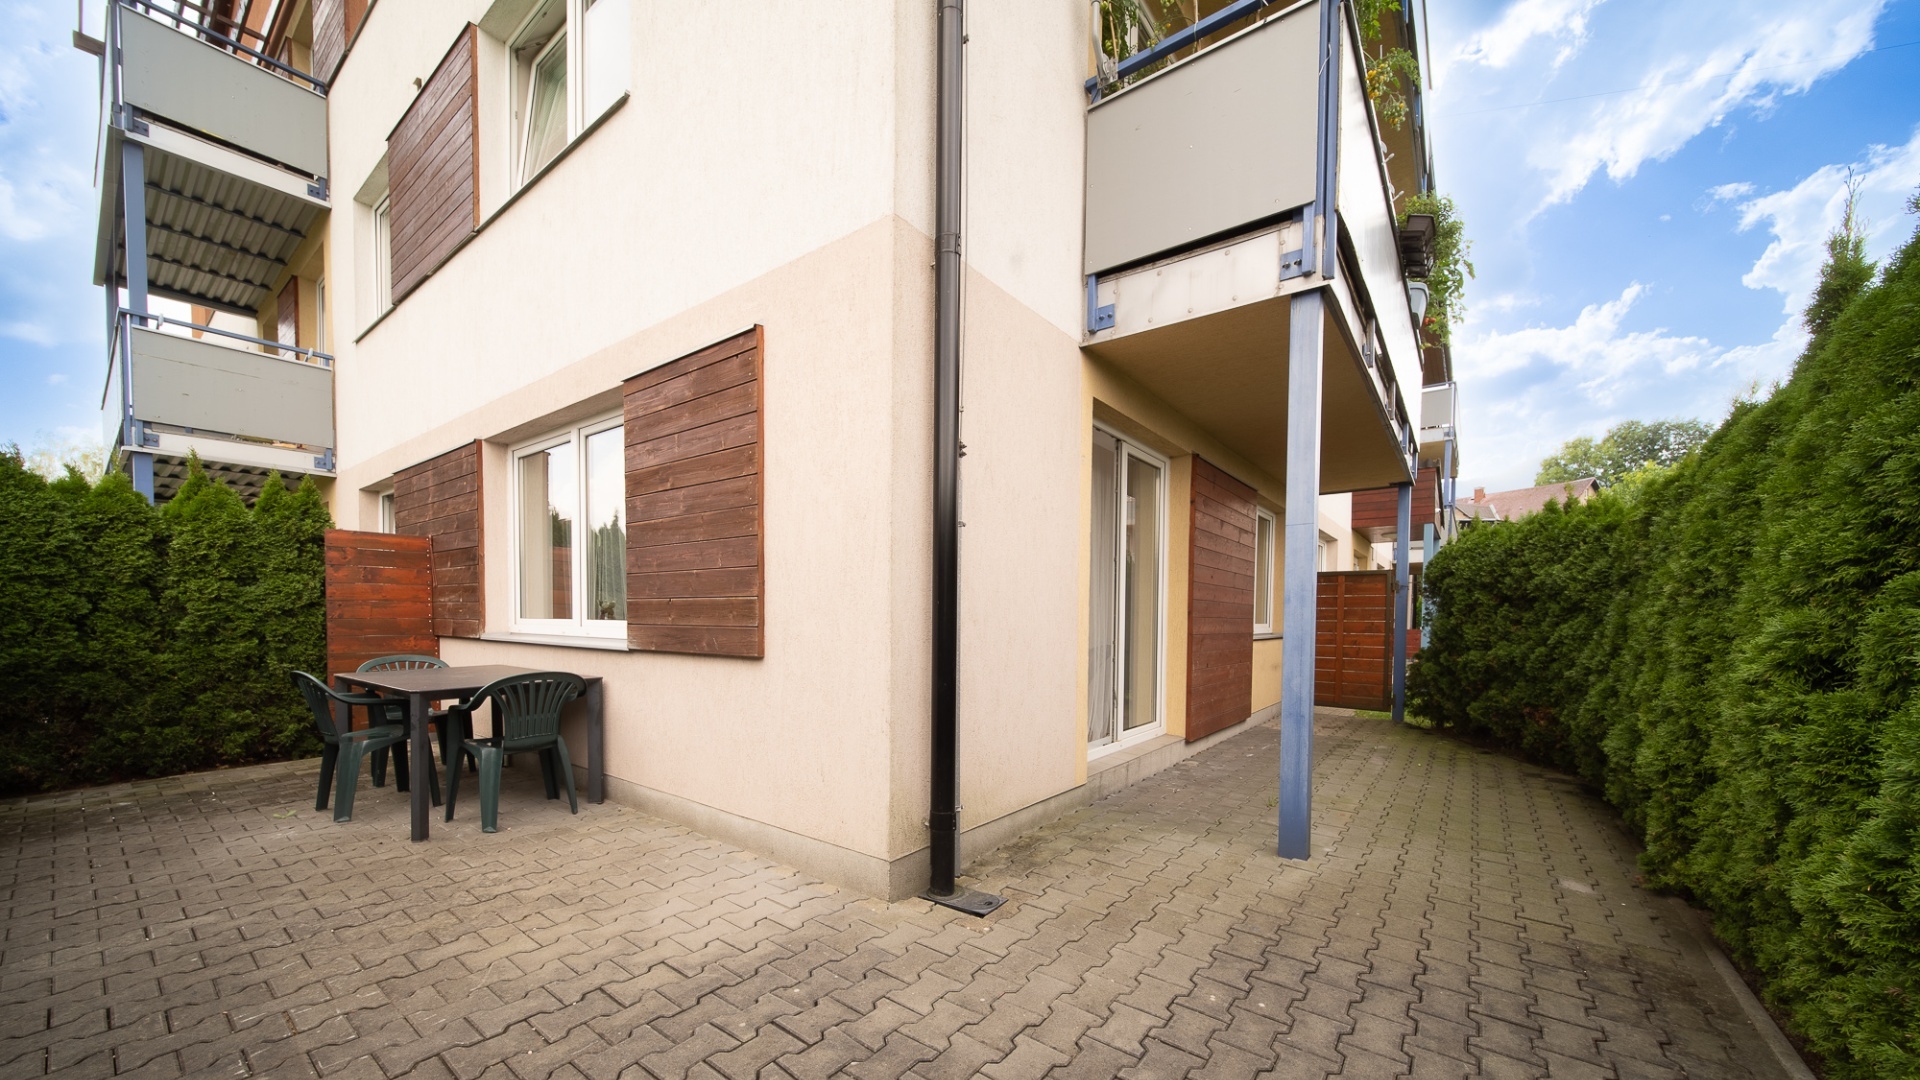 Prodej bytu 2+kk 51,82 m² s terasou 28,75 m² a parkovacím stáním - Liberec XXIII-Doubí